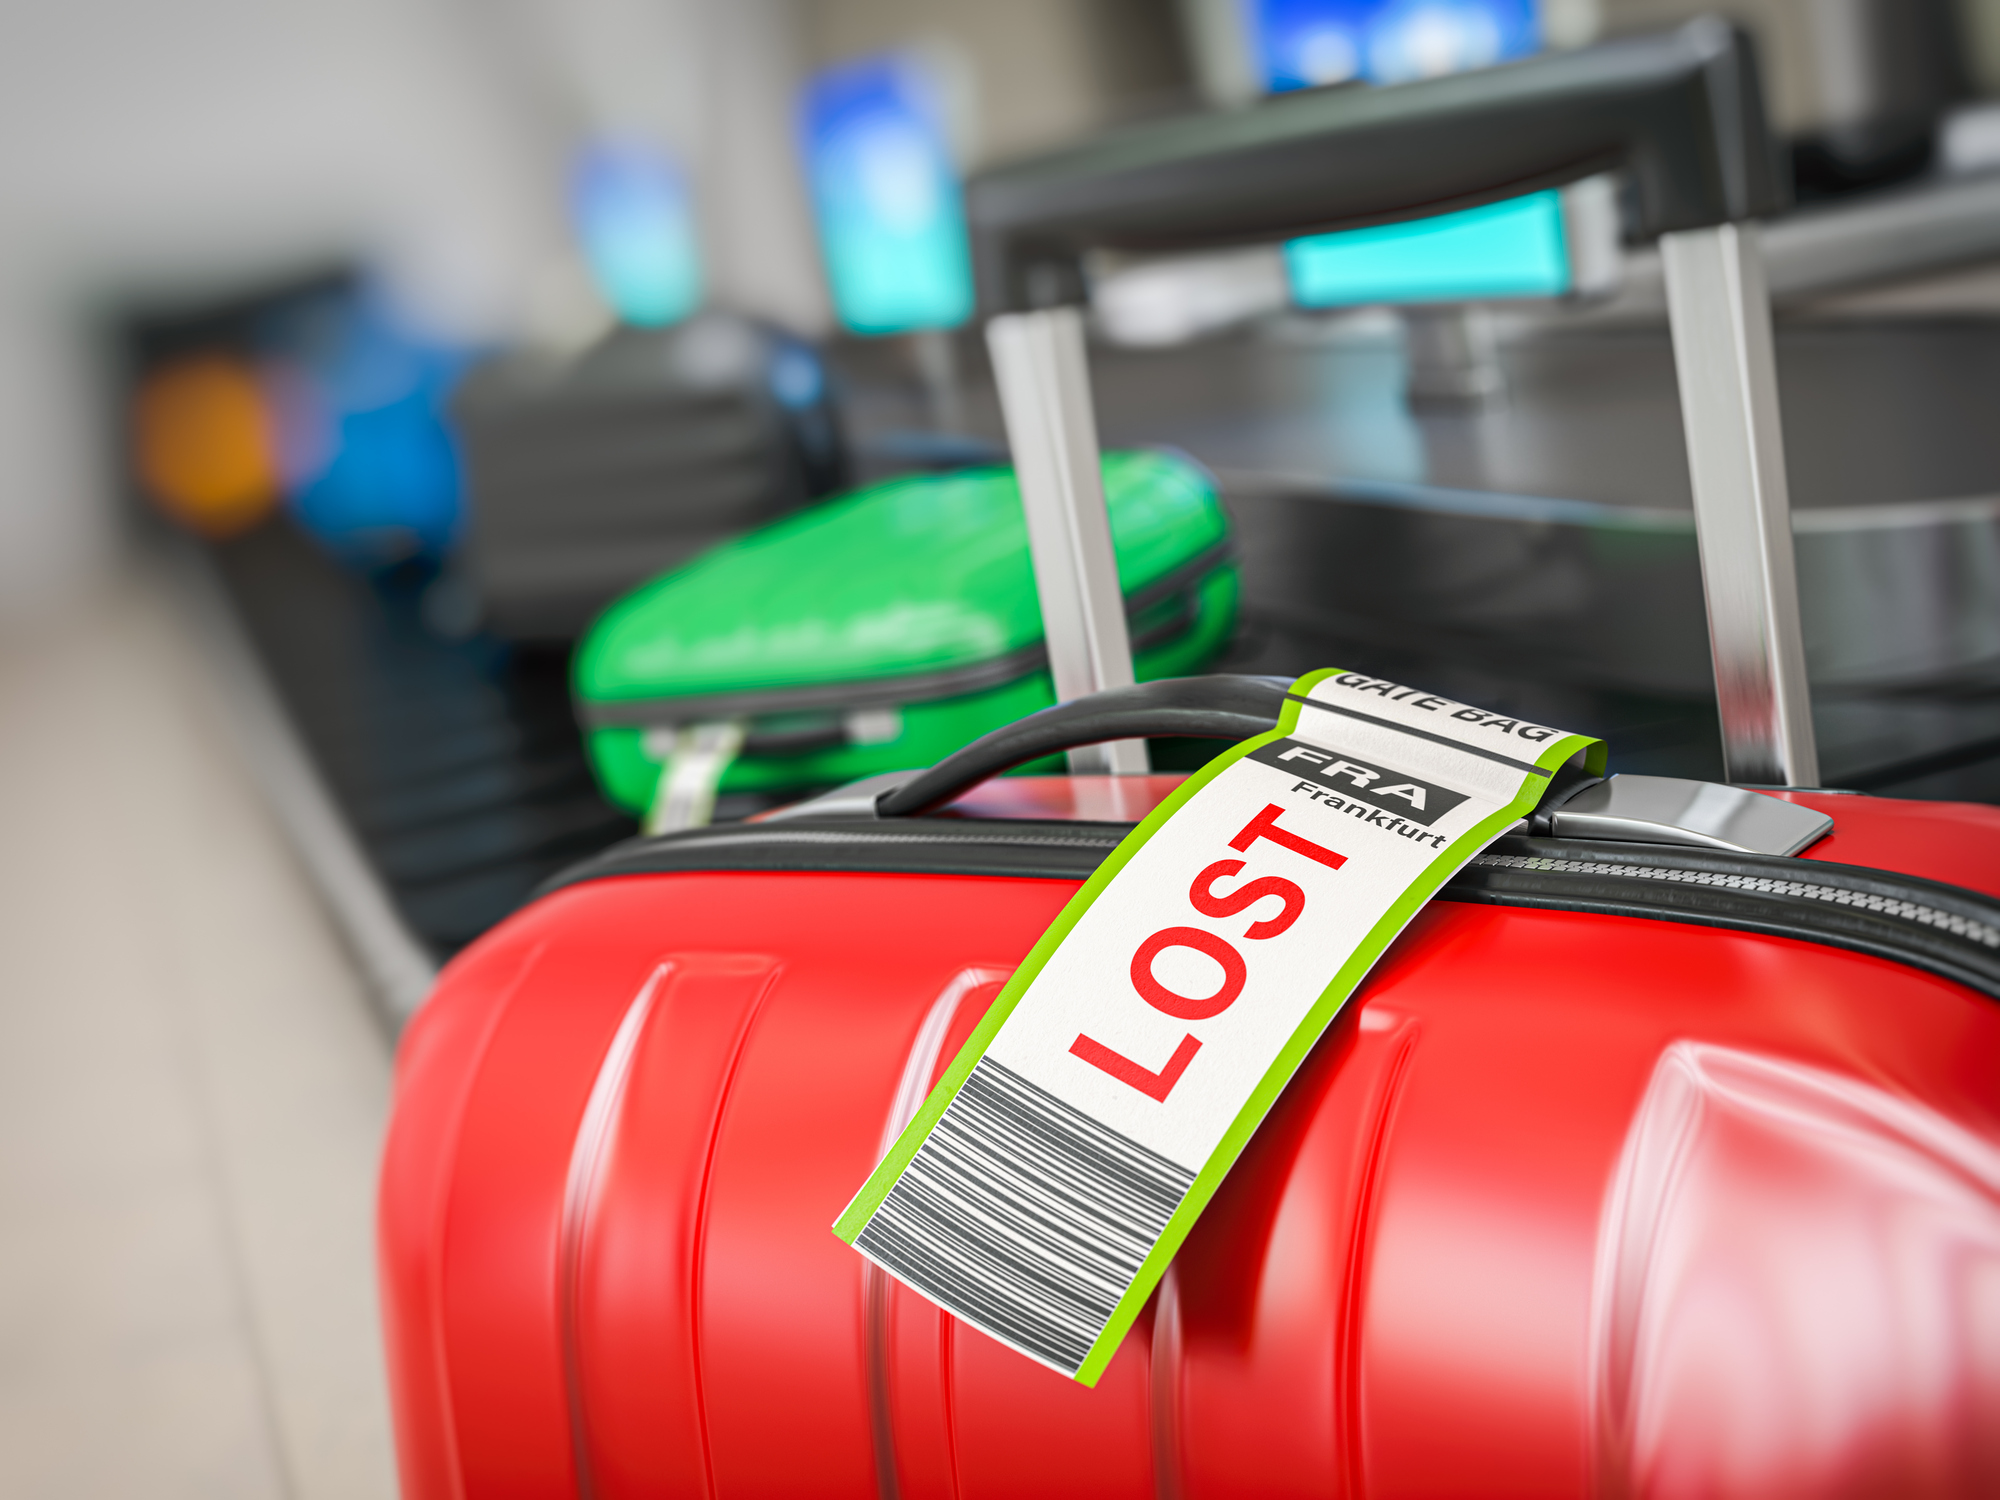 I forgrunden ses en kuffert med et taskeetiket, hvorpå der står "LOST", i baggrunden kører flere kufferter på en bagagebånd.